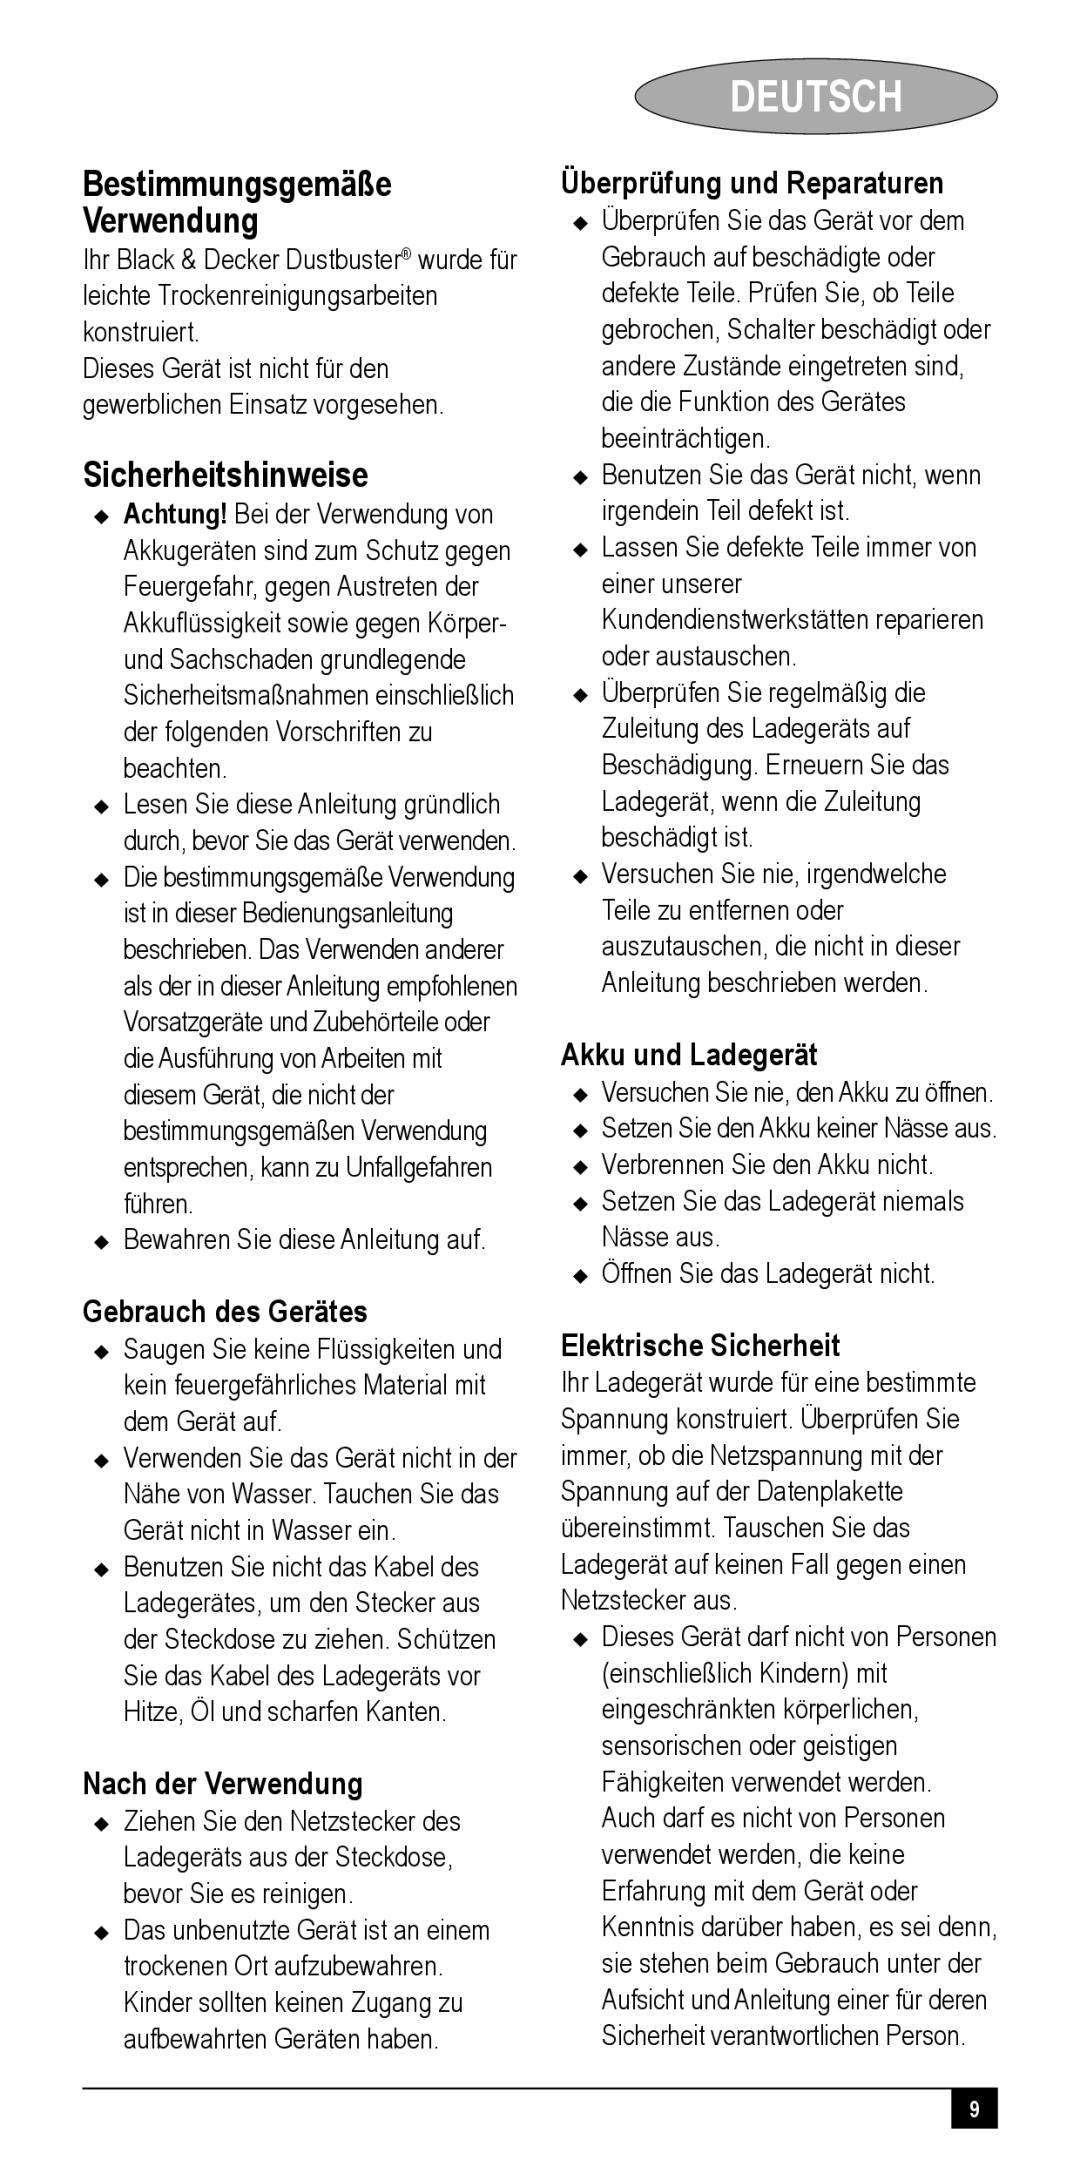 Black & Decker NV60XXY, NV72XXY, NV48XXY, NV24XXY, NV36XXY manual Deutsch, Bestimmungsgemäße Verwendung, Sicherheitshinweise 